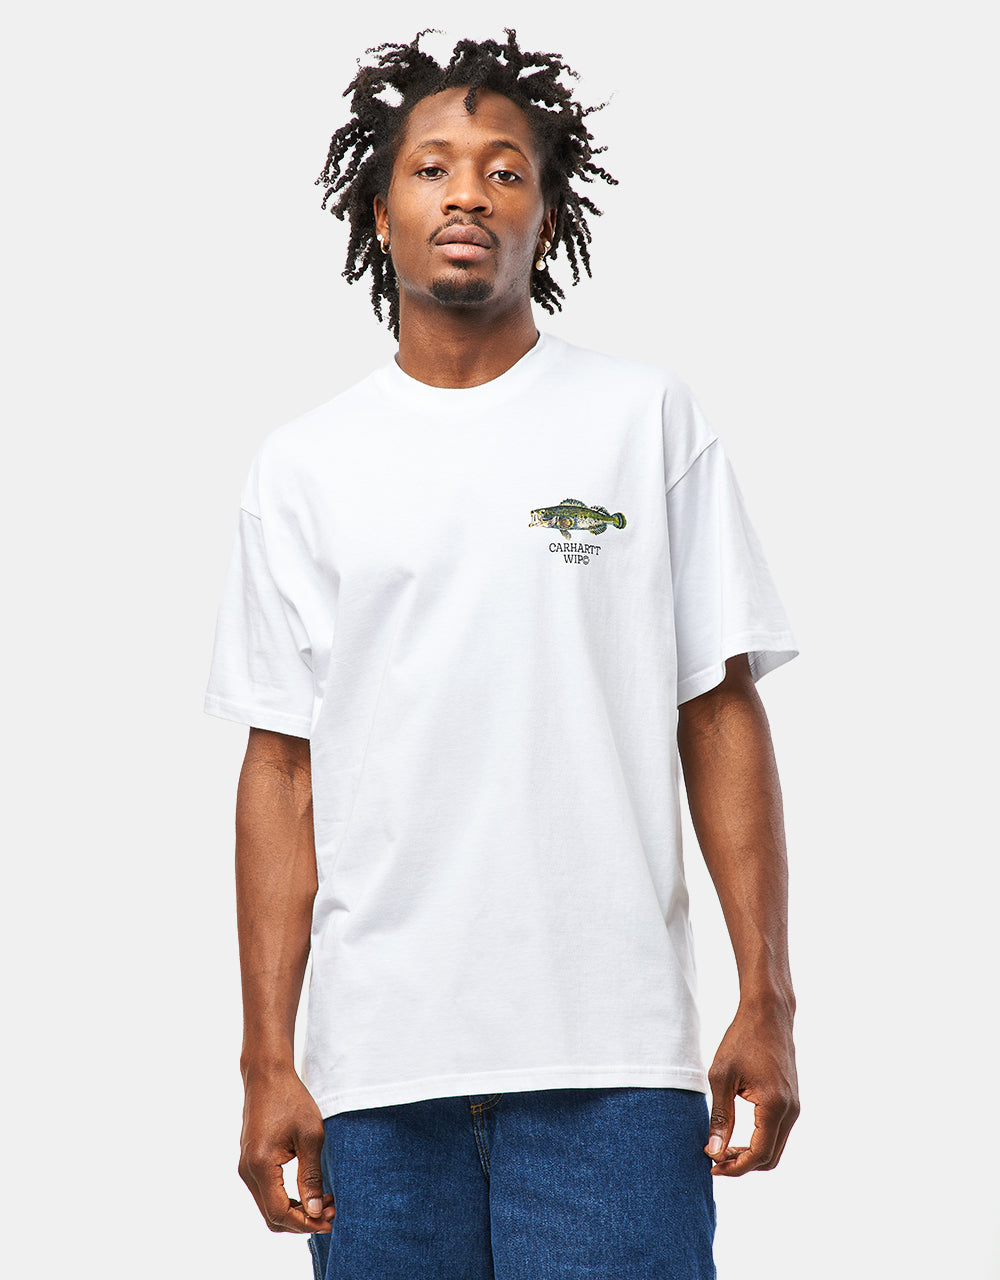 Carhartt WIP Fish T-Shirt - White